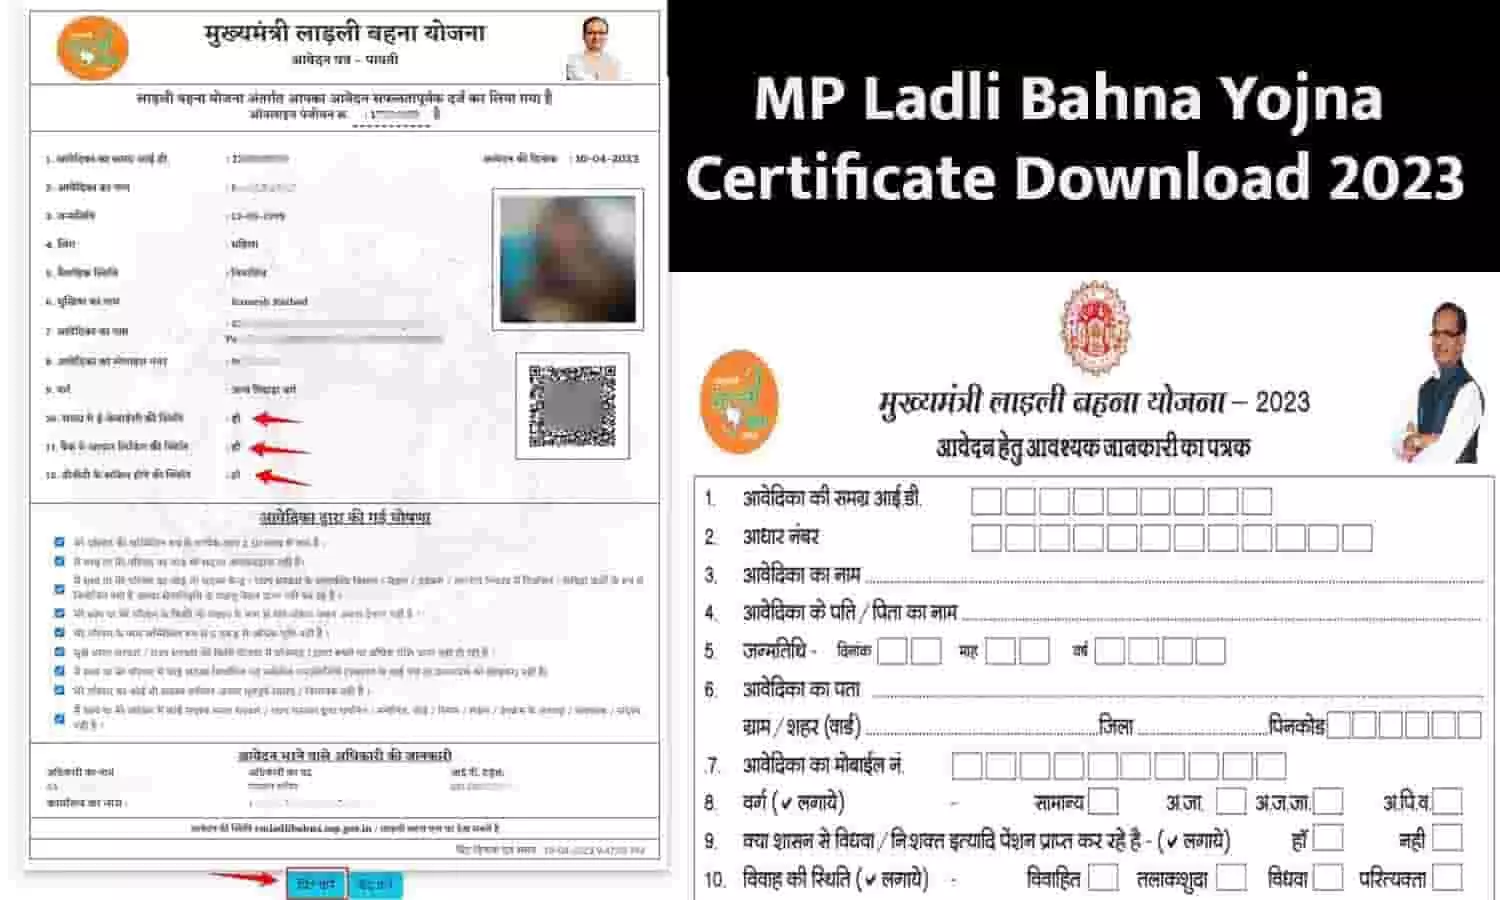 MP Ladli Bahna Yojna Certificate Download 2023: सभी महिलाओं को मिलेंगे ₹1000 ,फटाफट यहां से करे सर्टिफिकेट डाउनलोड